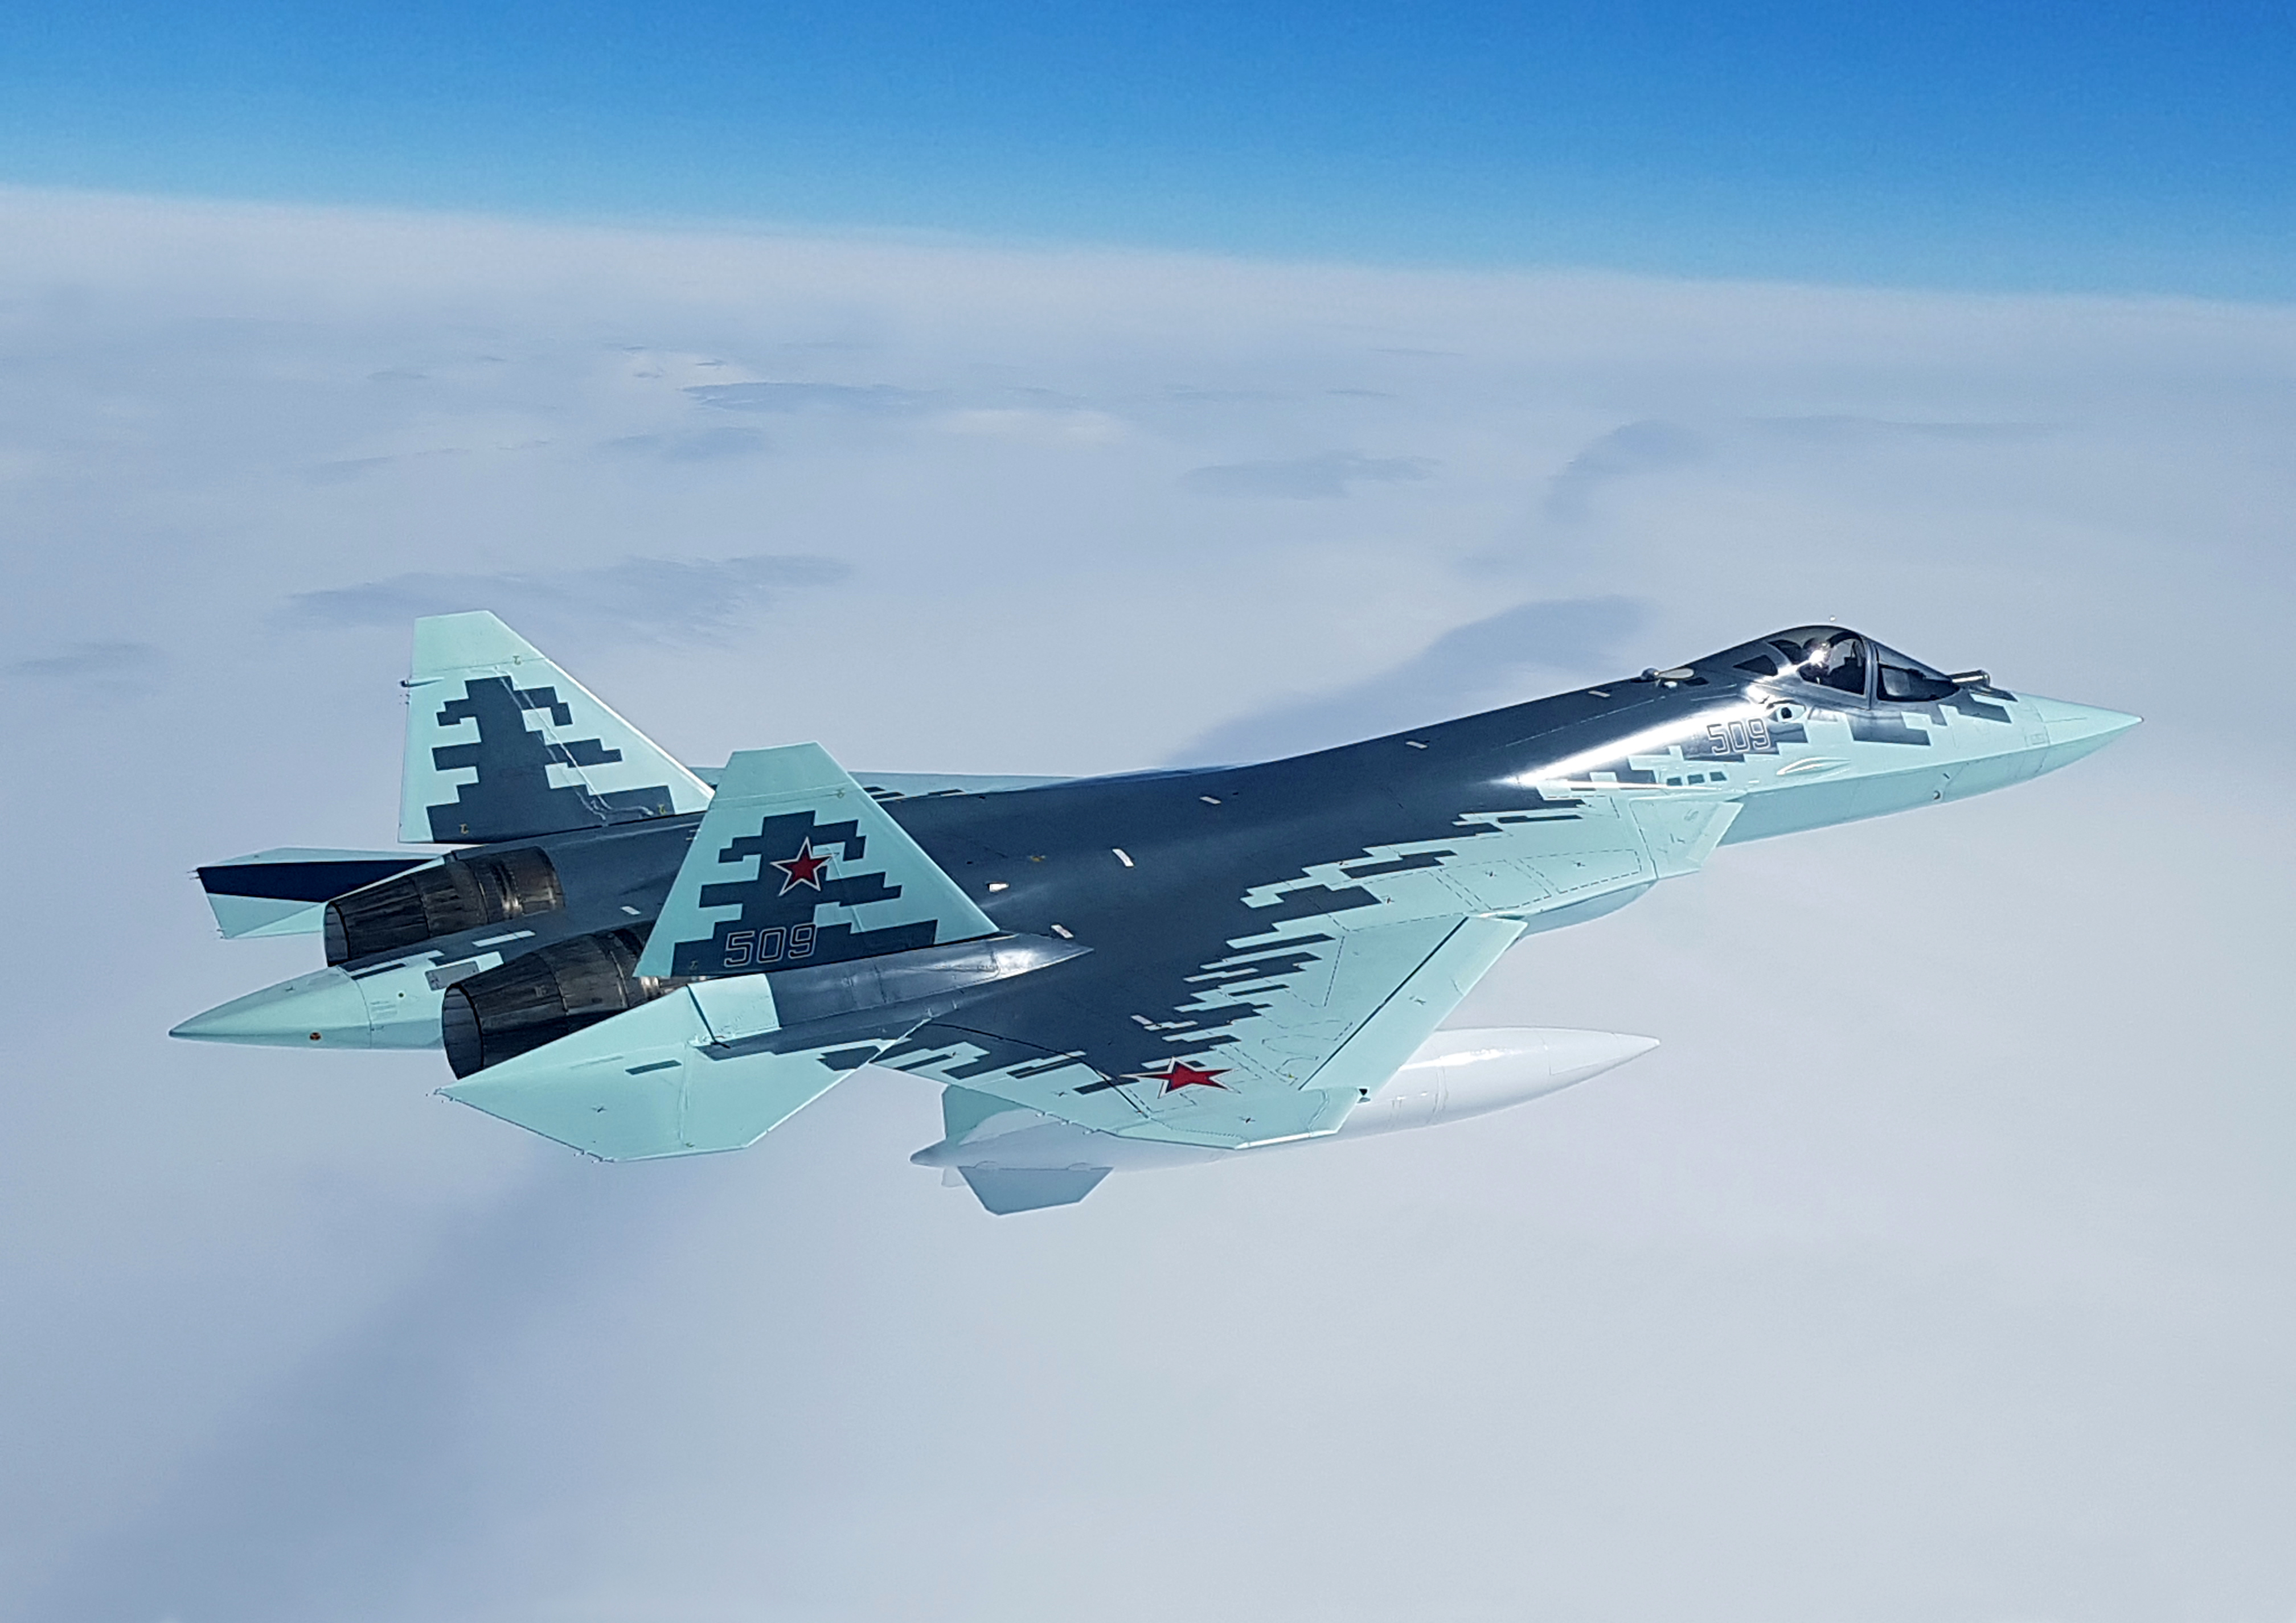 Su-57